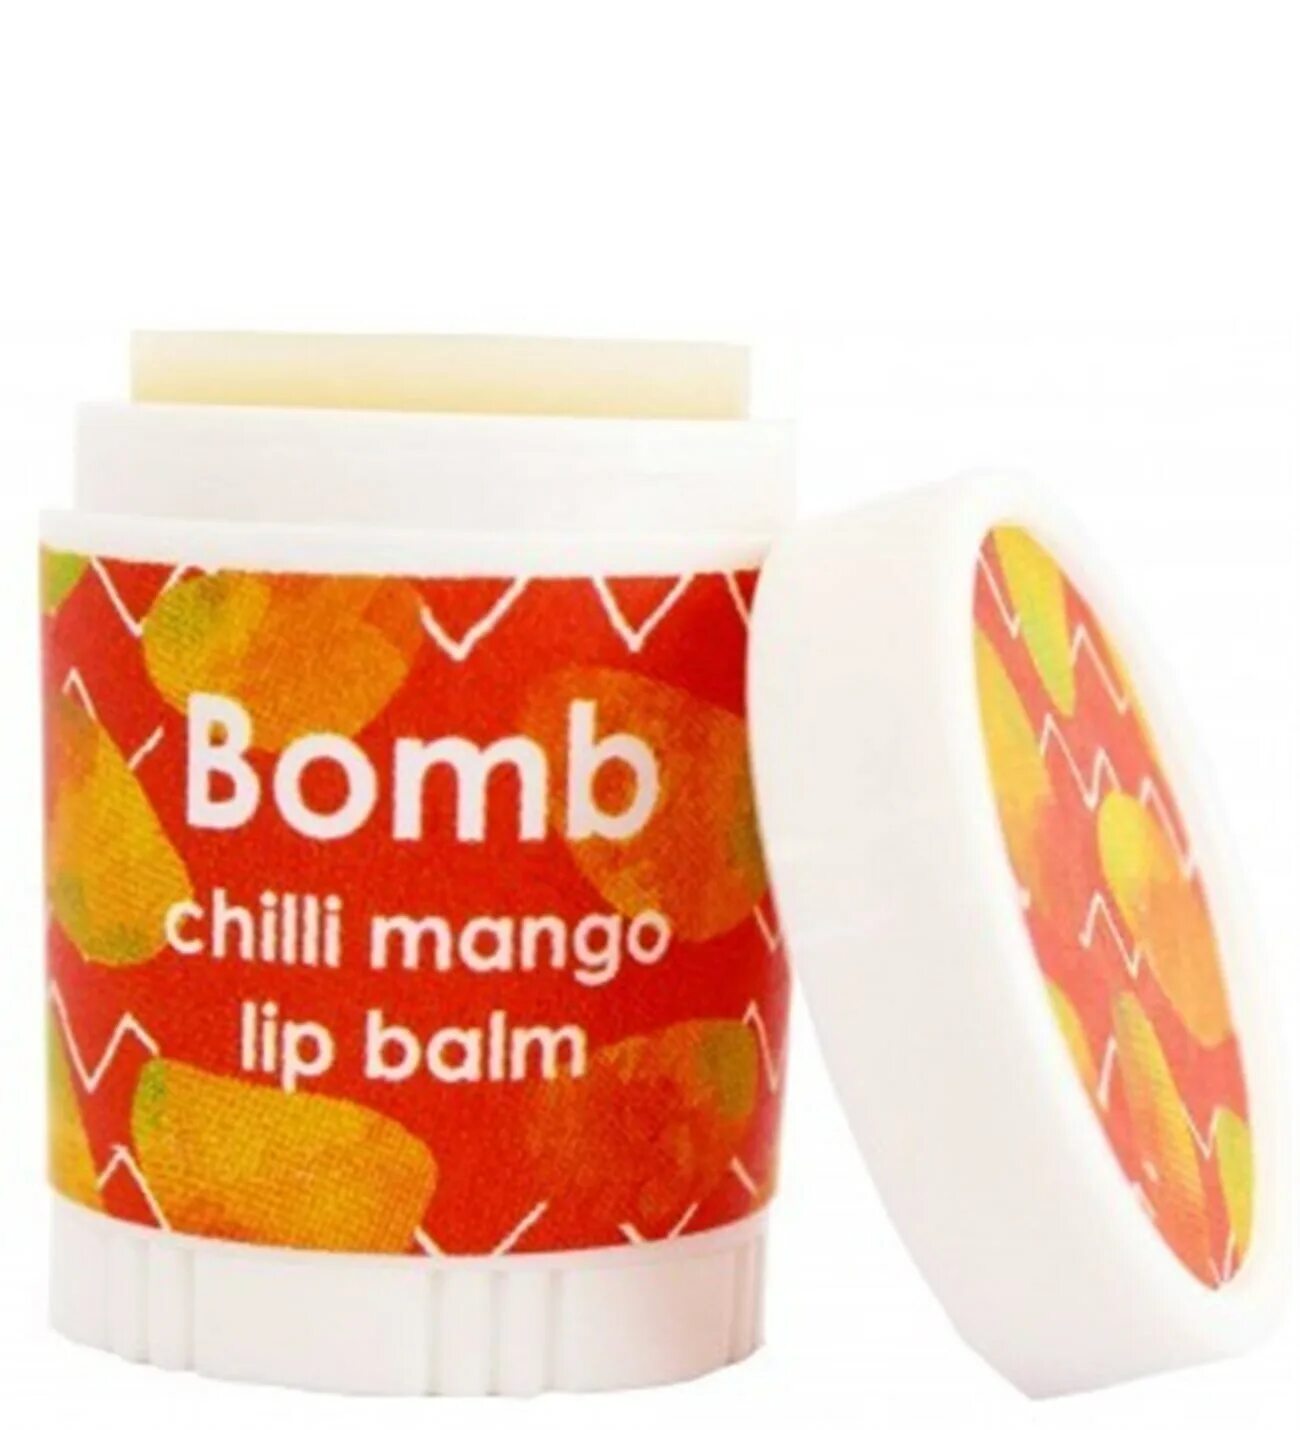 Lip Balm Mango. Бальзам для губ "манго". Beauty Bomb бальзам для губ Lip Balm. Bomb с манго. Бомб косметика бальзам для губ